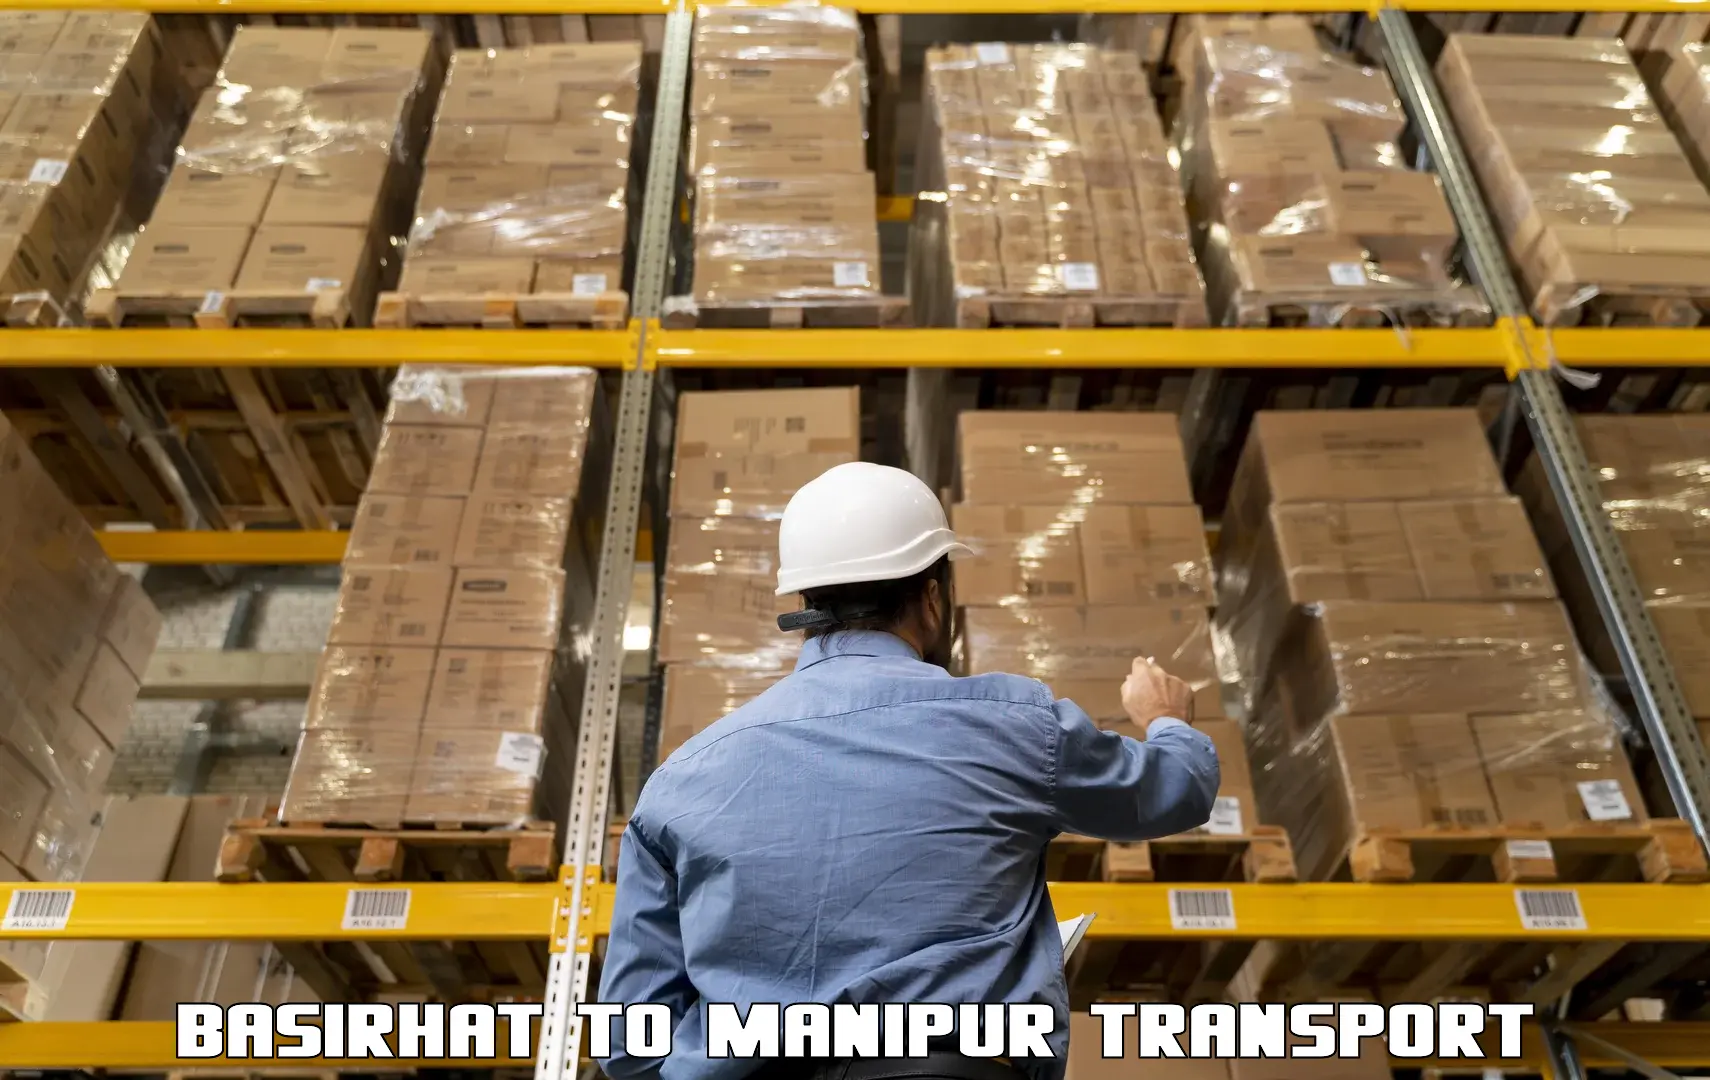 Container transport service Basirhat to Churachandpur